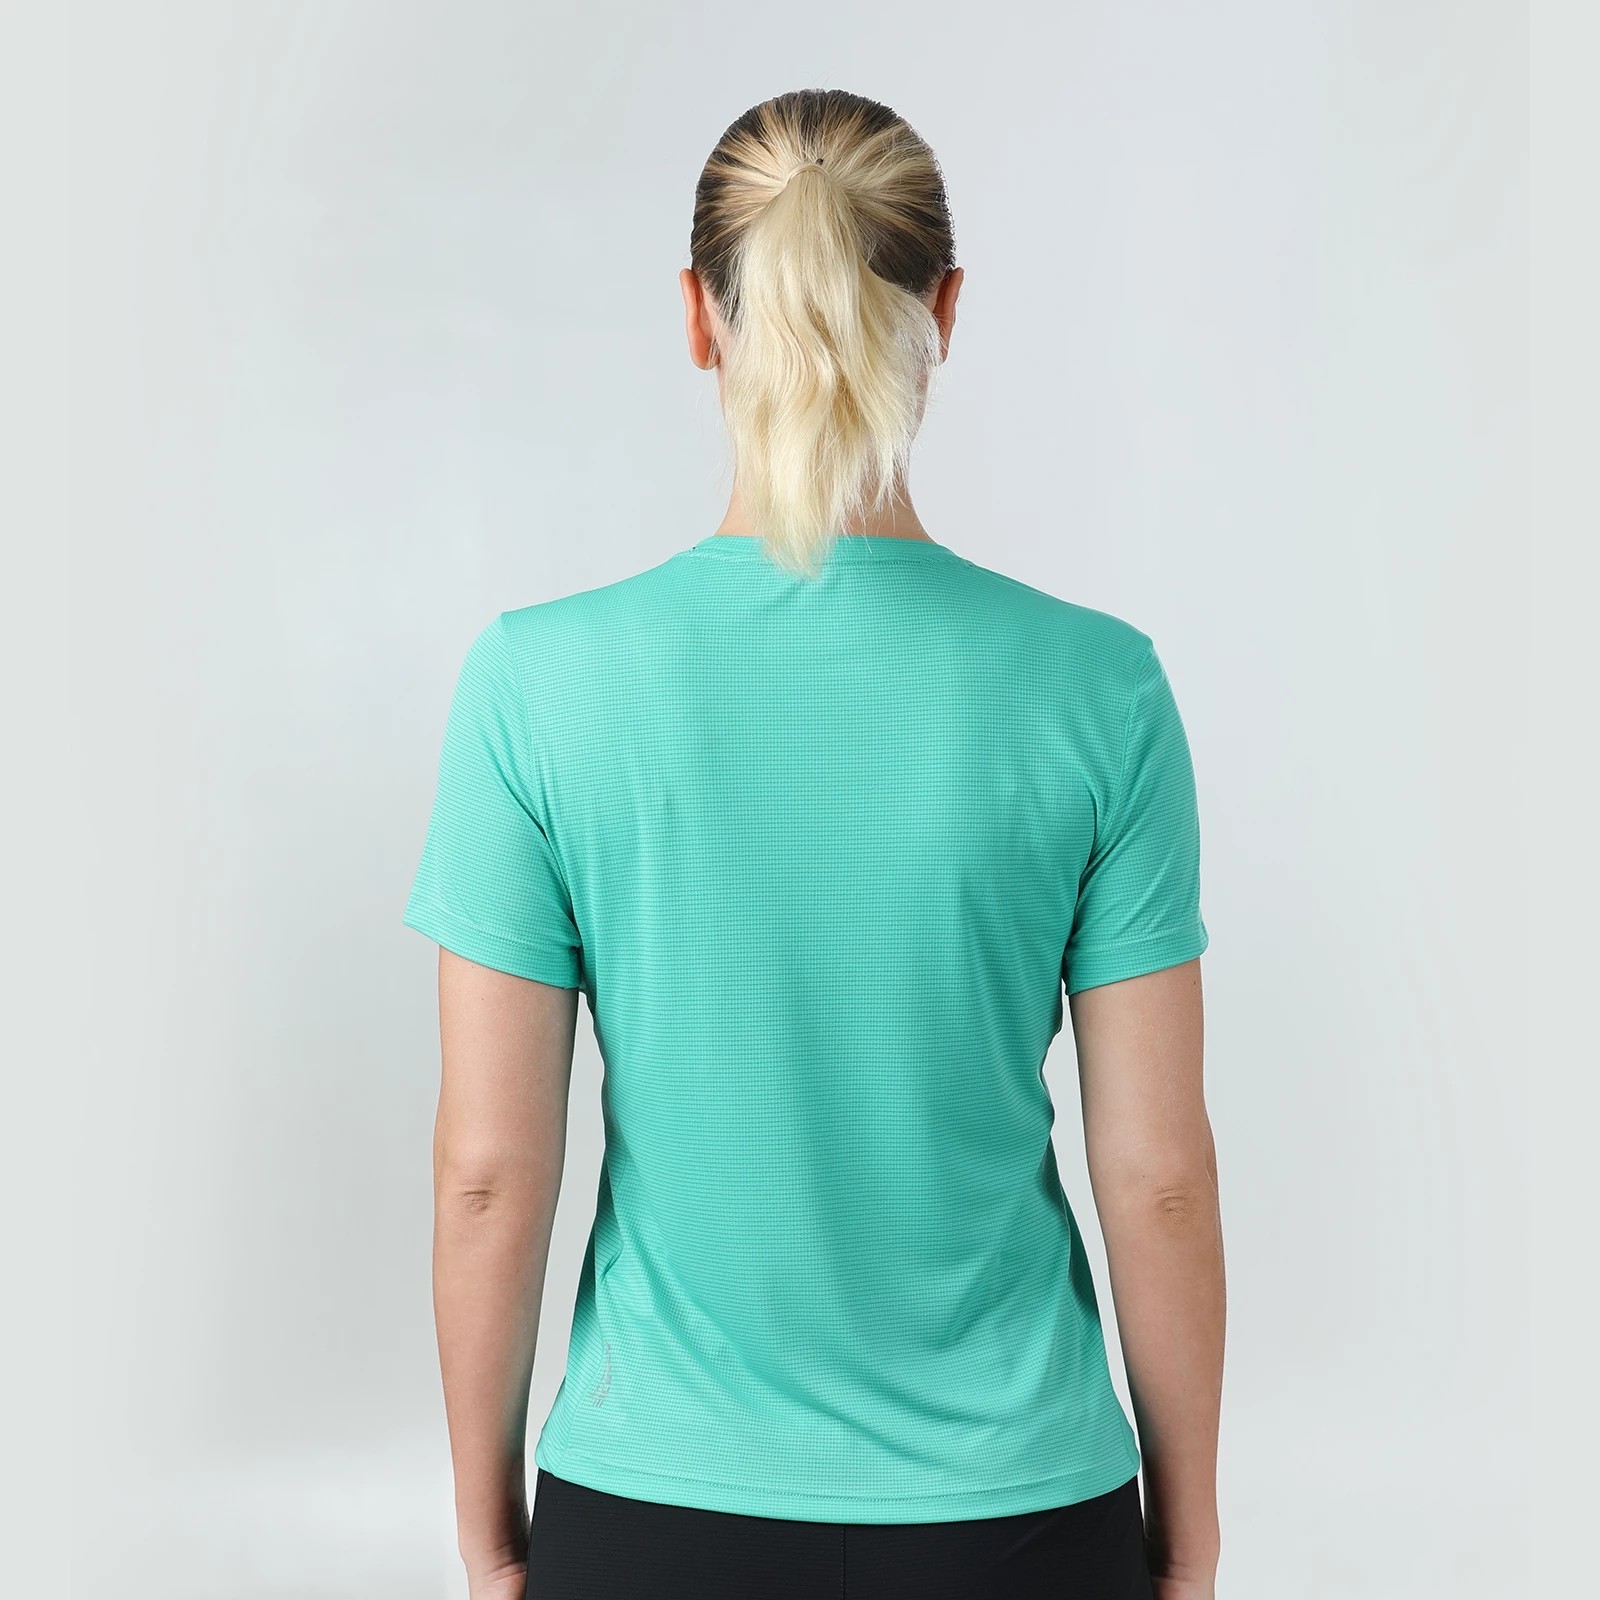 AONIJIE FW5135, camiseta deportiva de verano para mujer, camiseta ligera de secado rápido para mujer, para correr, gimnasio, ocio, cuello redondo, camisetas de manga corta